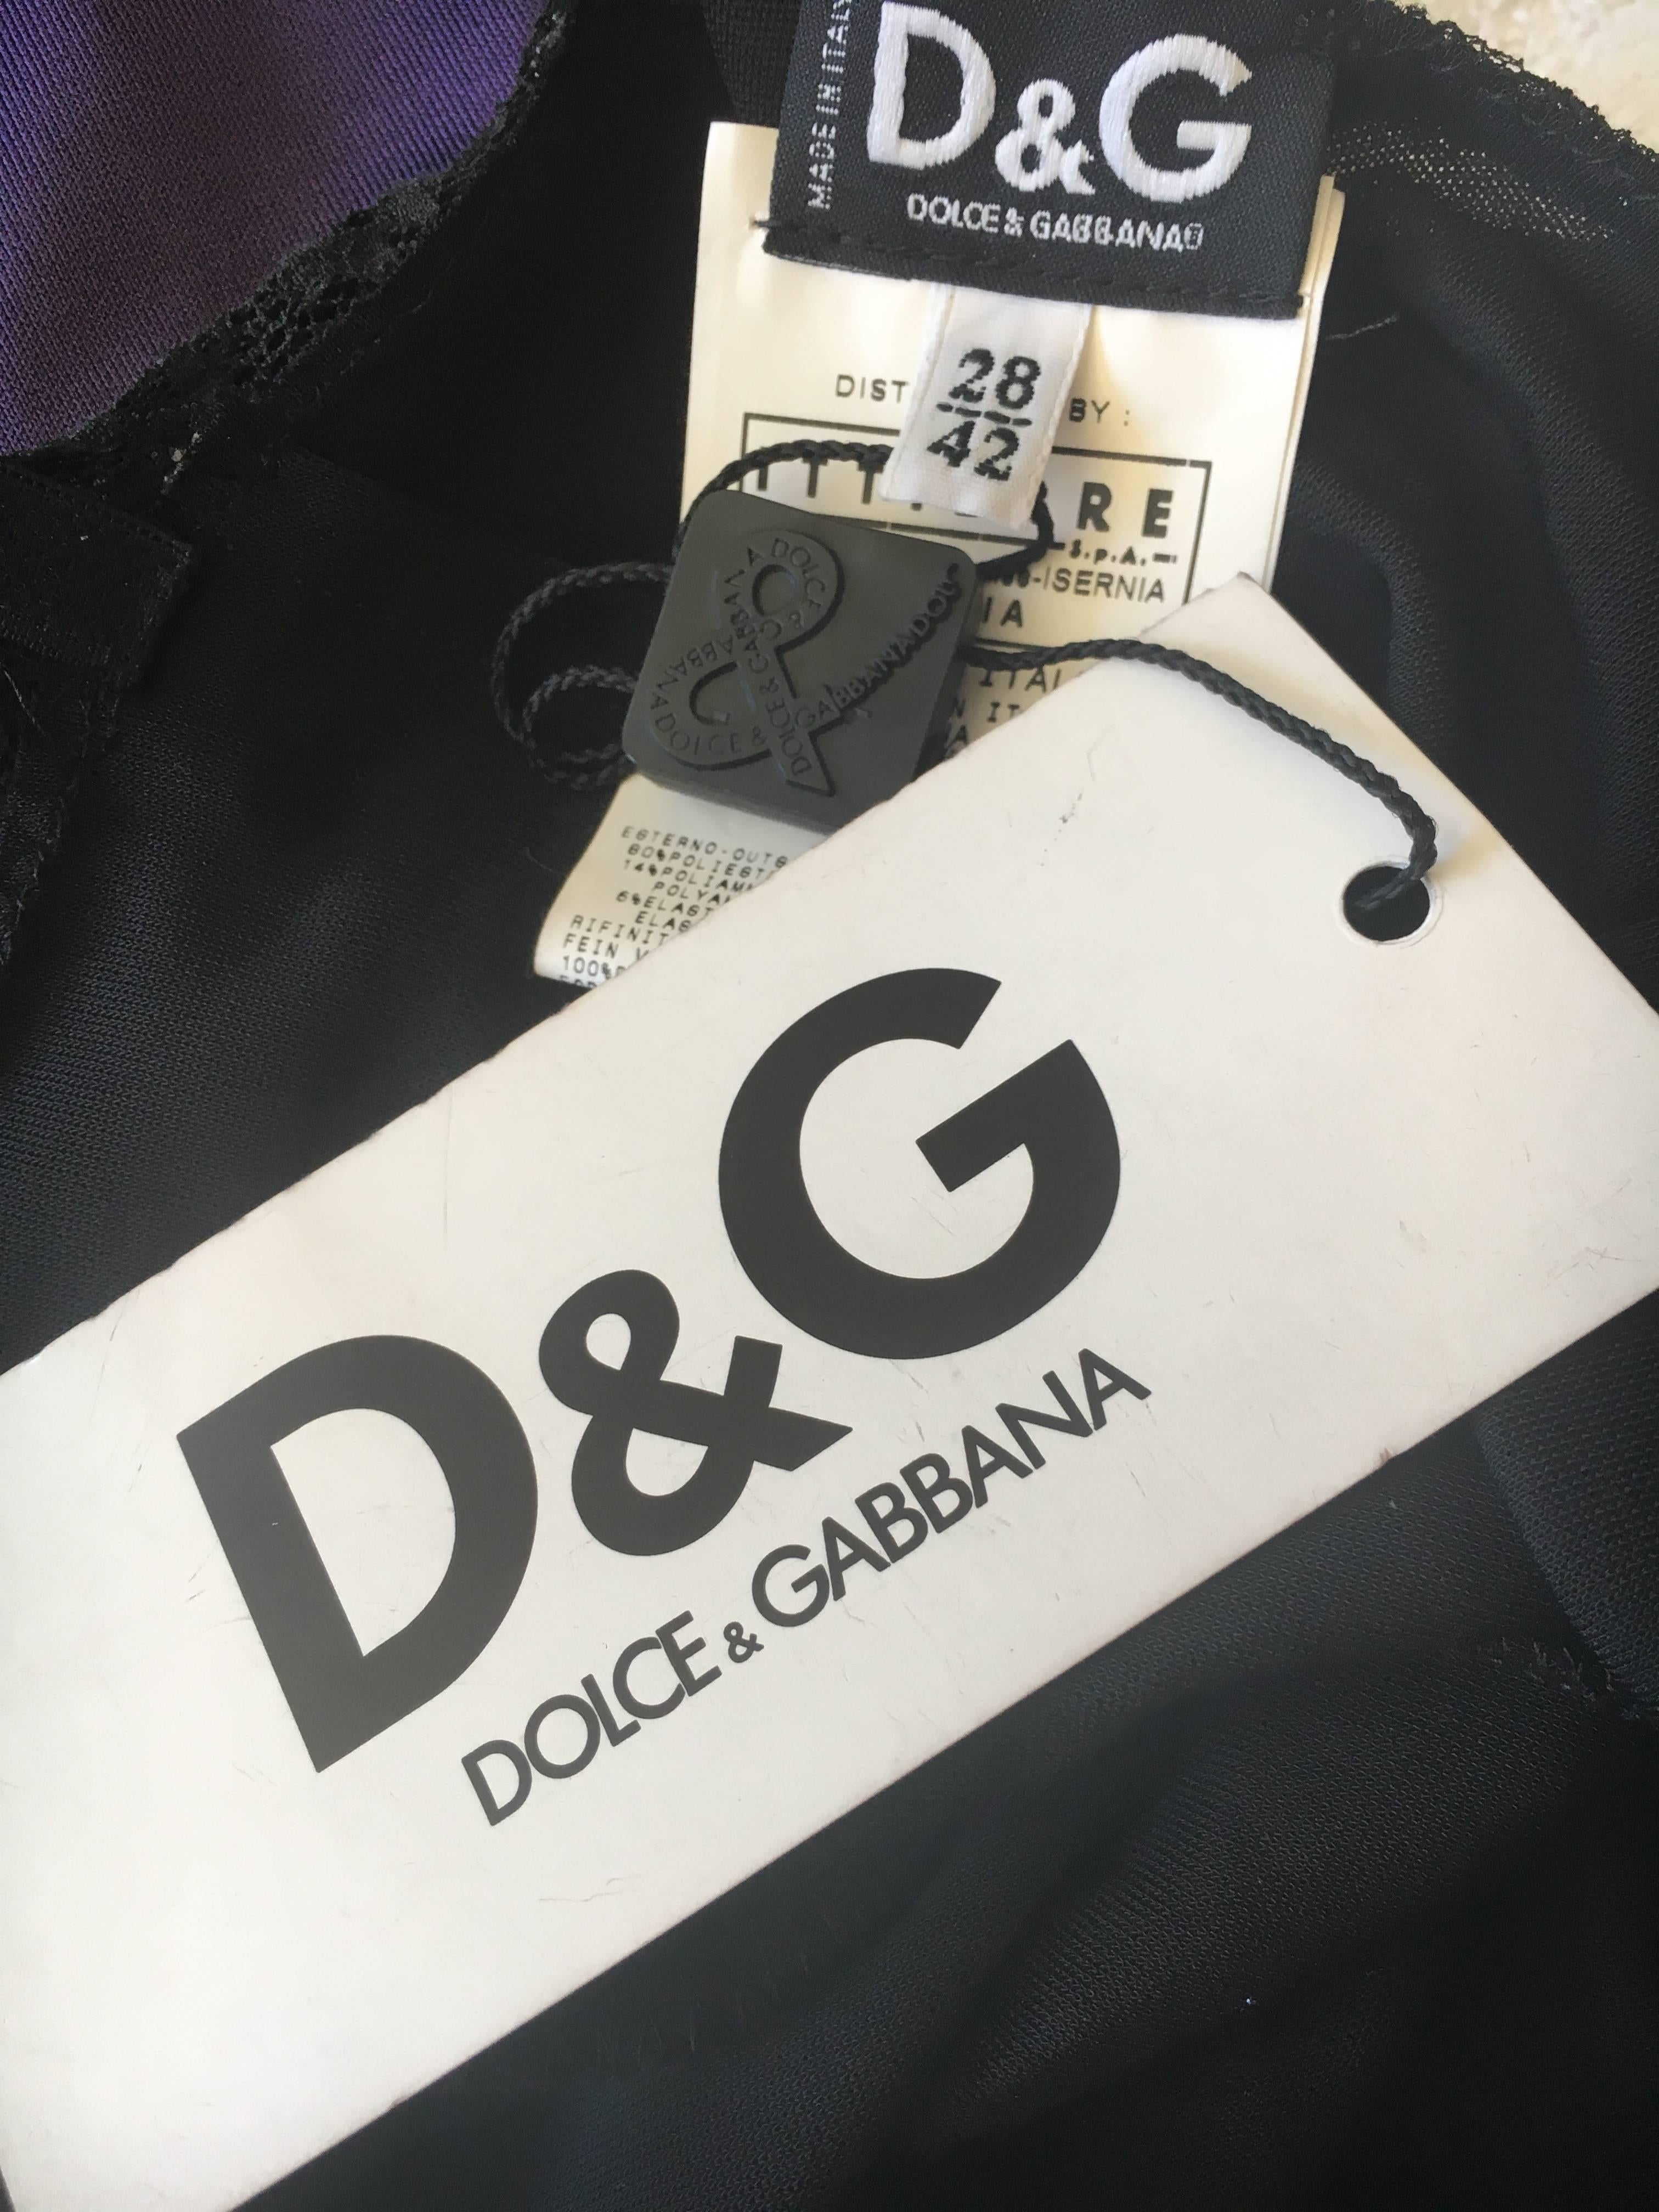 D&G Dolce & Gabbana Vintage Lace Overlay Sheer Little Black Cocktail Dress 6